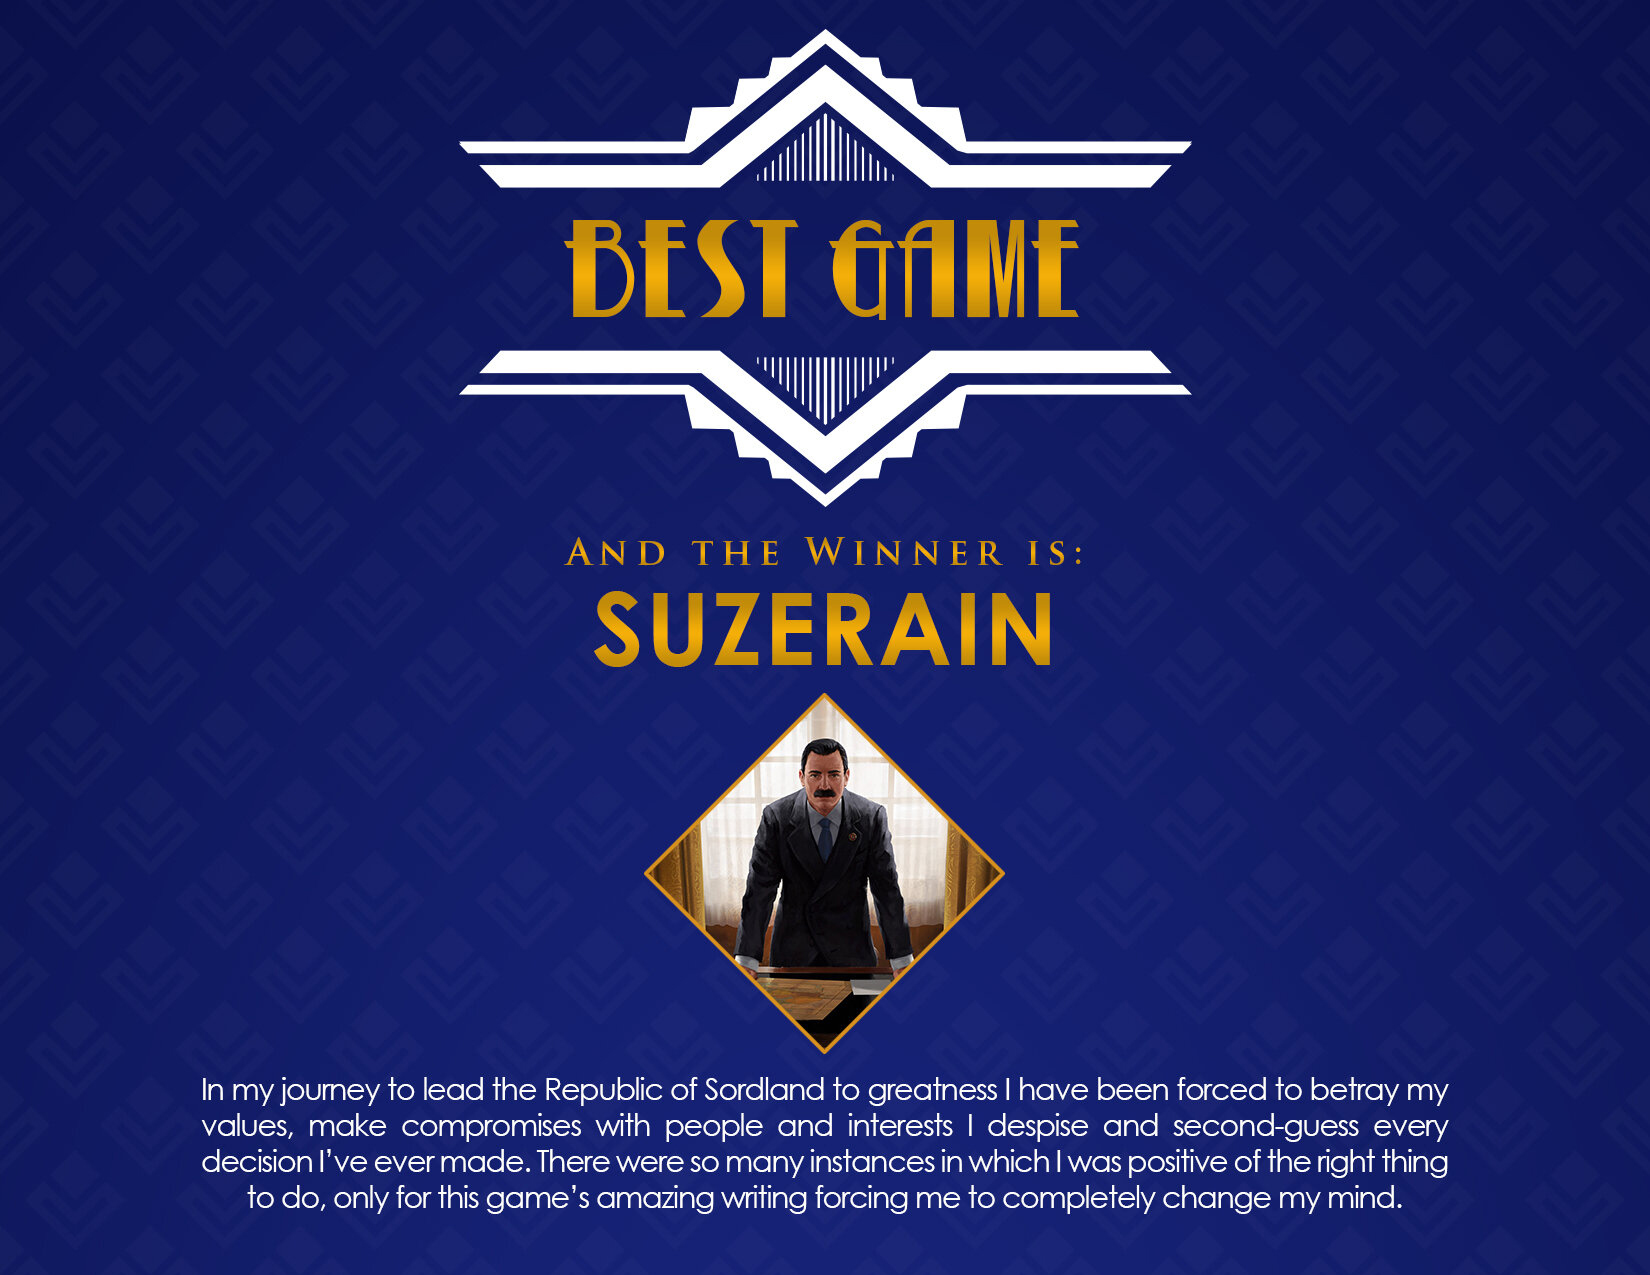 Suzerain - December - Steam News